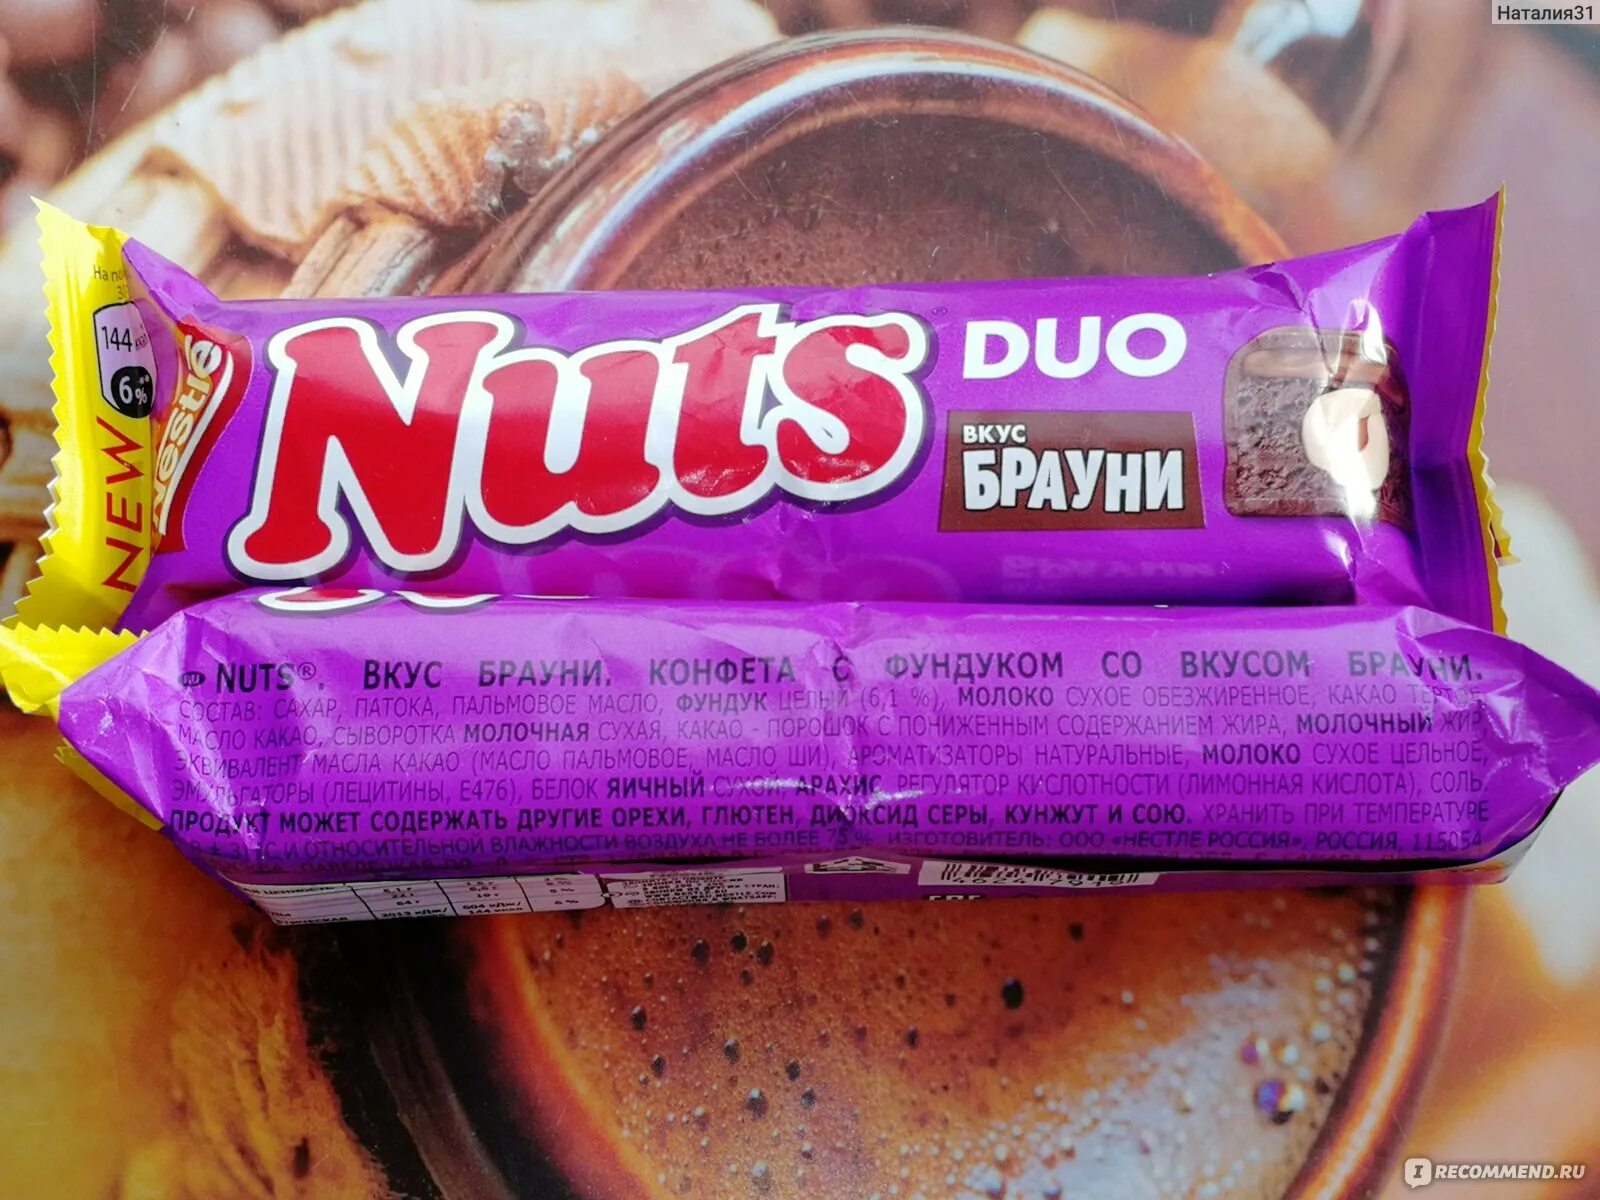 Вкус брауни. Натс Брауни дуо. Nuts вкус Брауни. Nestle Nuts Duo. Натс батончик вкусы.